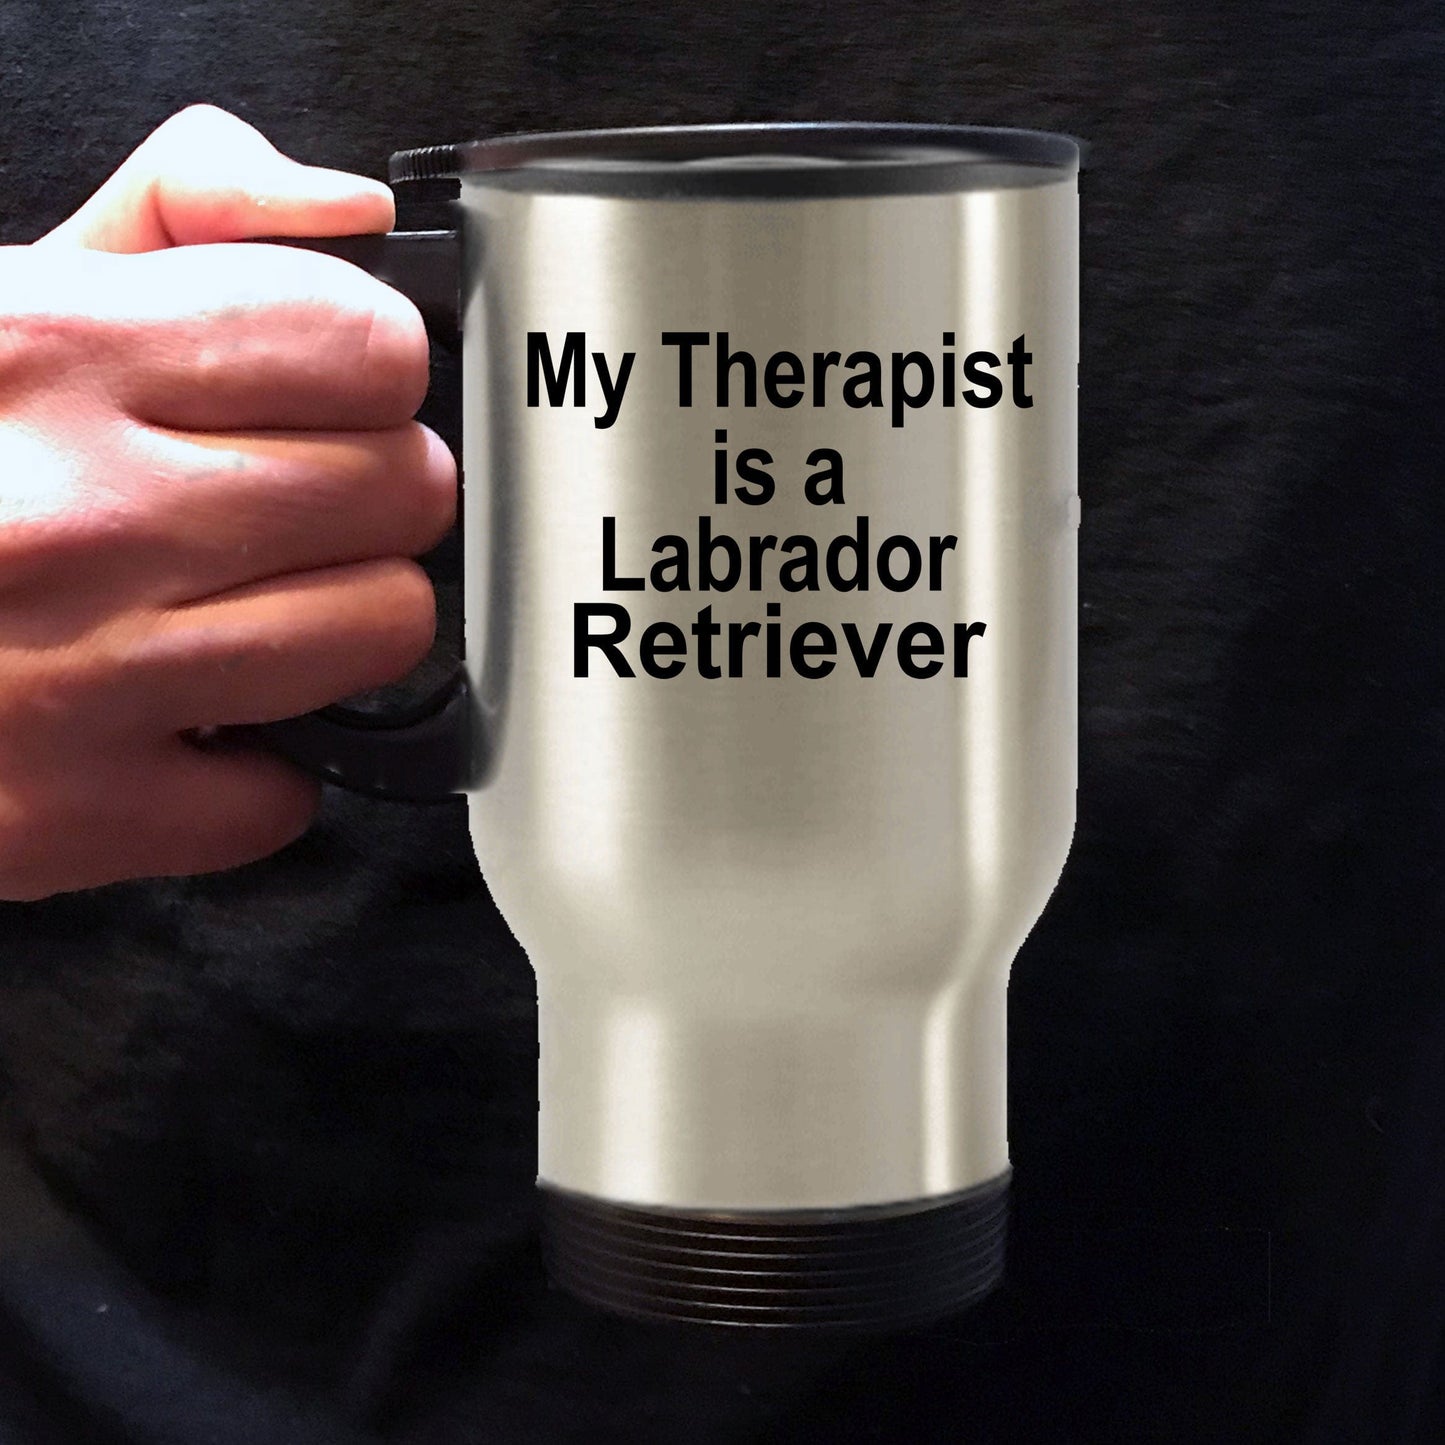 Labrador Retriever Dog Therapist Travel Coffee Mug